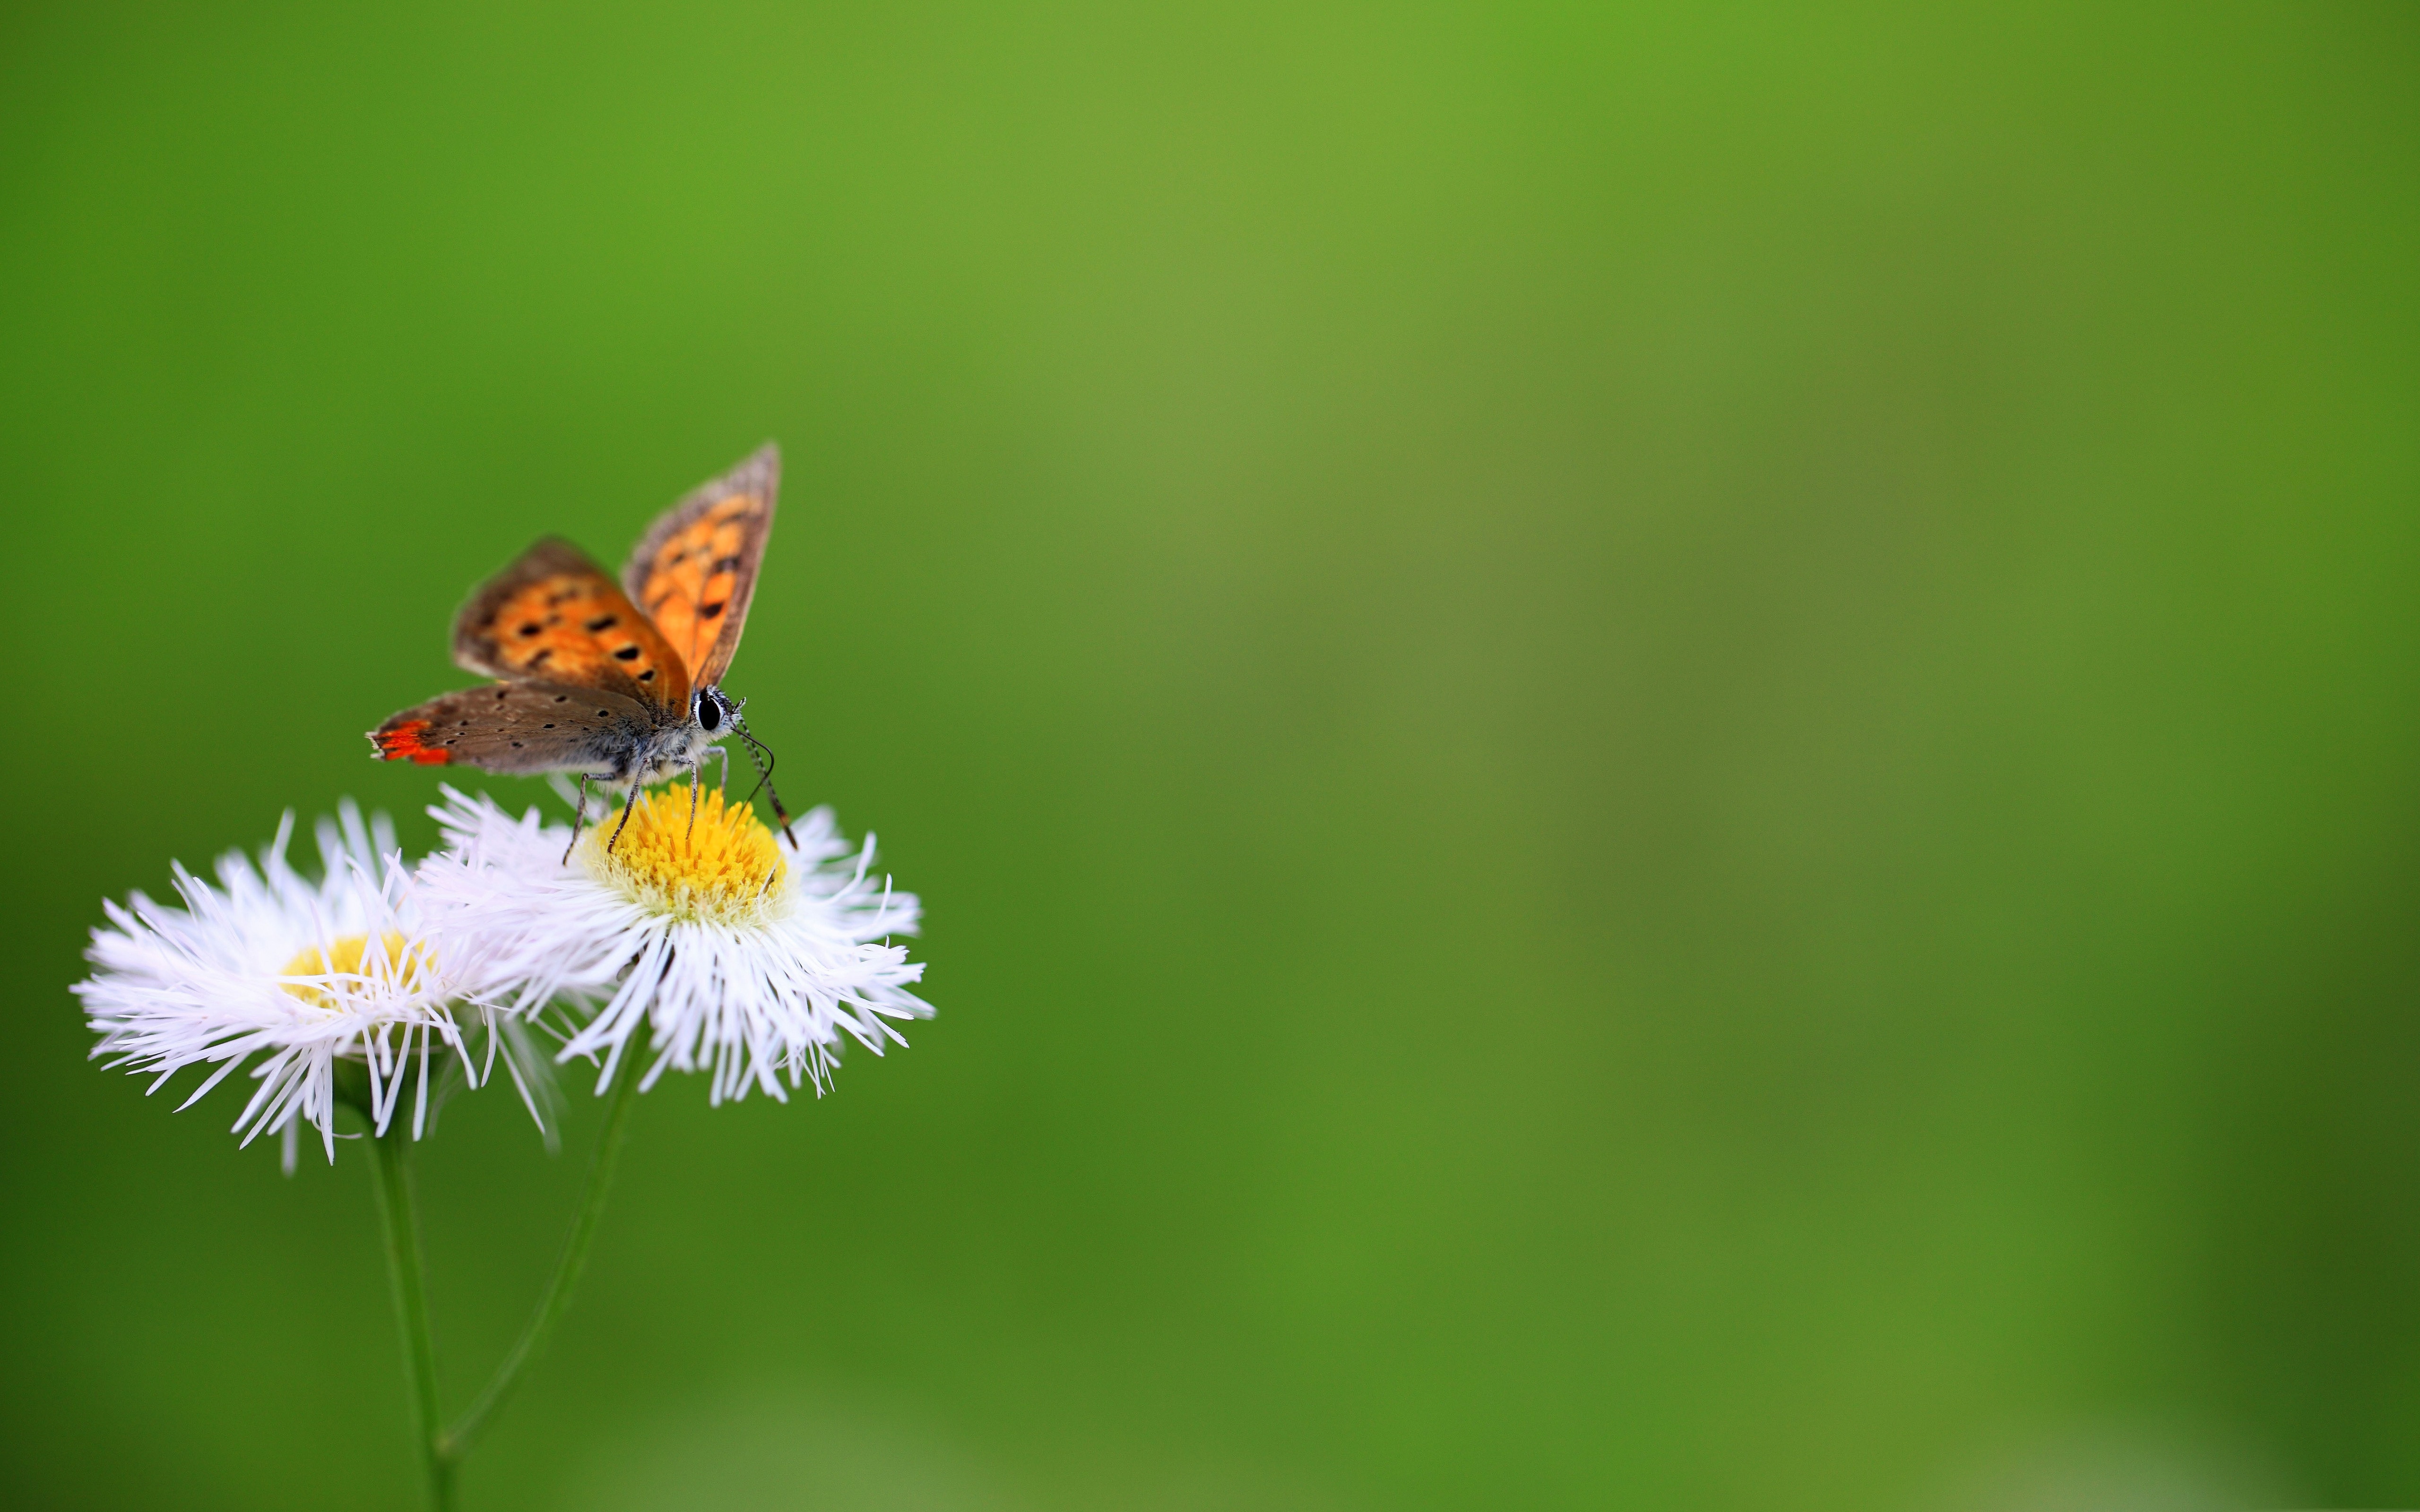 Цветок бабочка зеленый. Бабочка на цветке. Бабочки на травинке в природе. Обои на рабочий стол бабочки. Фон насекомые.